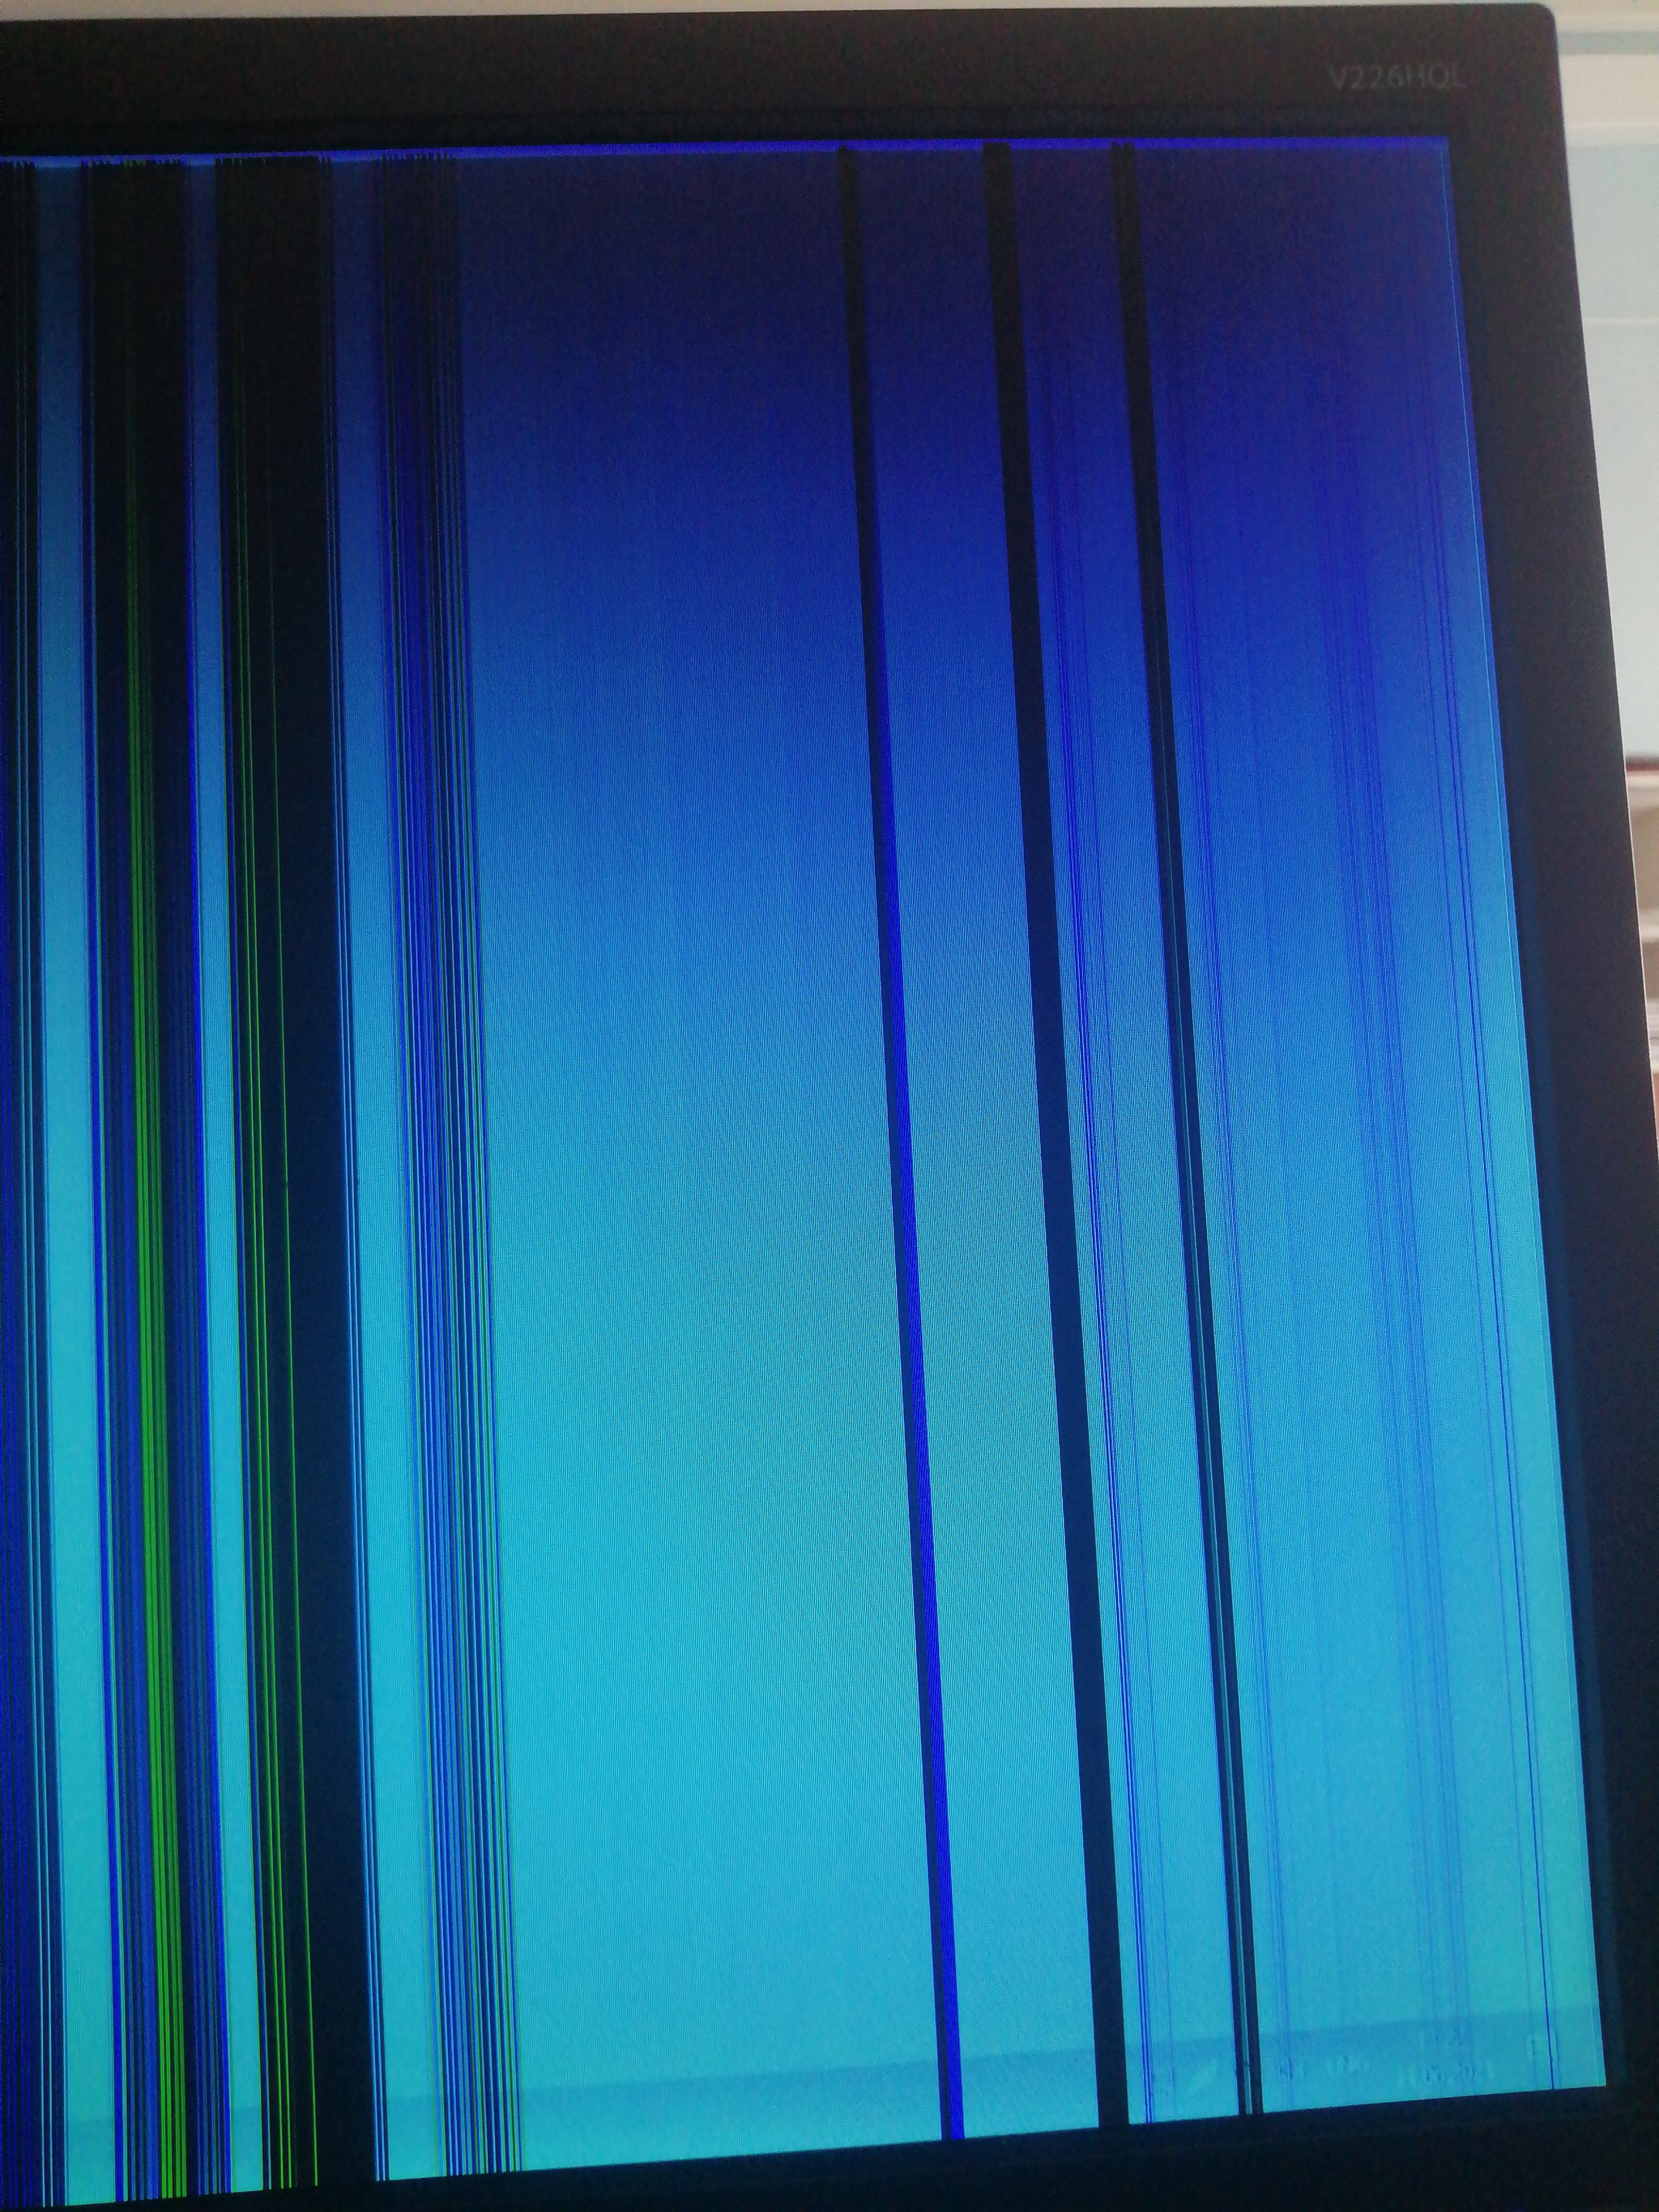 Полоски на экране компьютера. Полосы на экране. Разноцветные полосы на экране. Полосы на мониторе. Полоса на мониторе компьютера вертикальная.